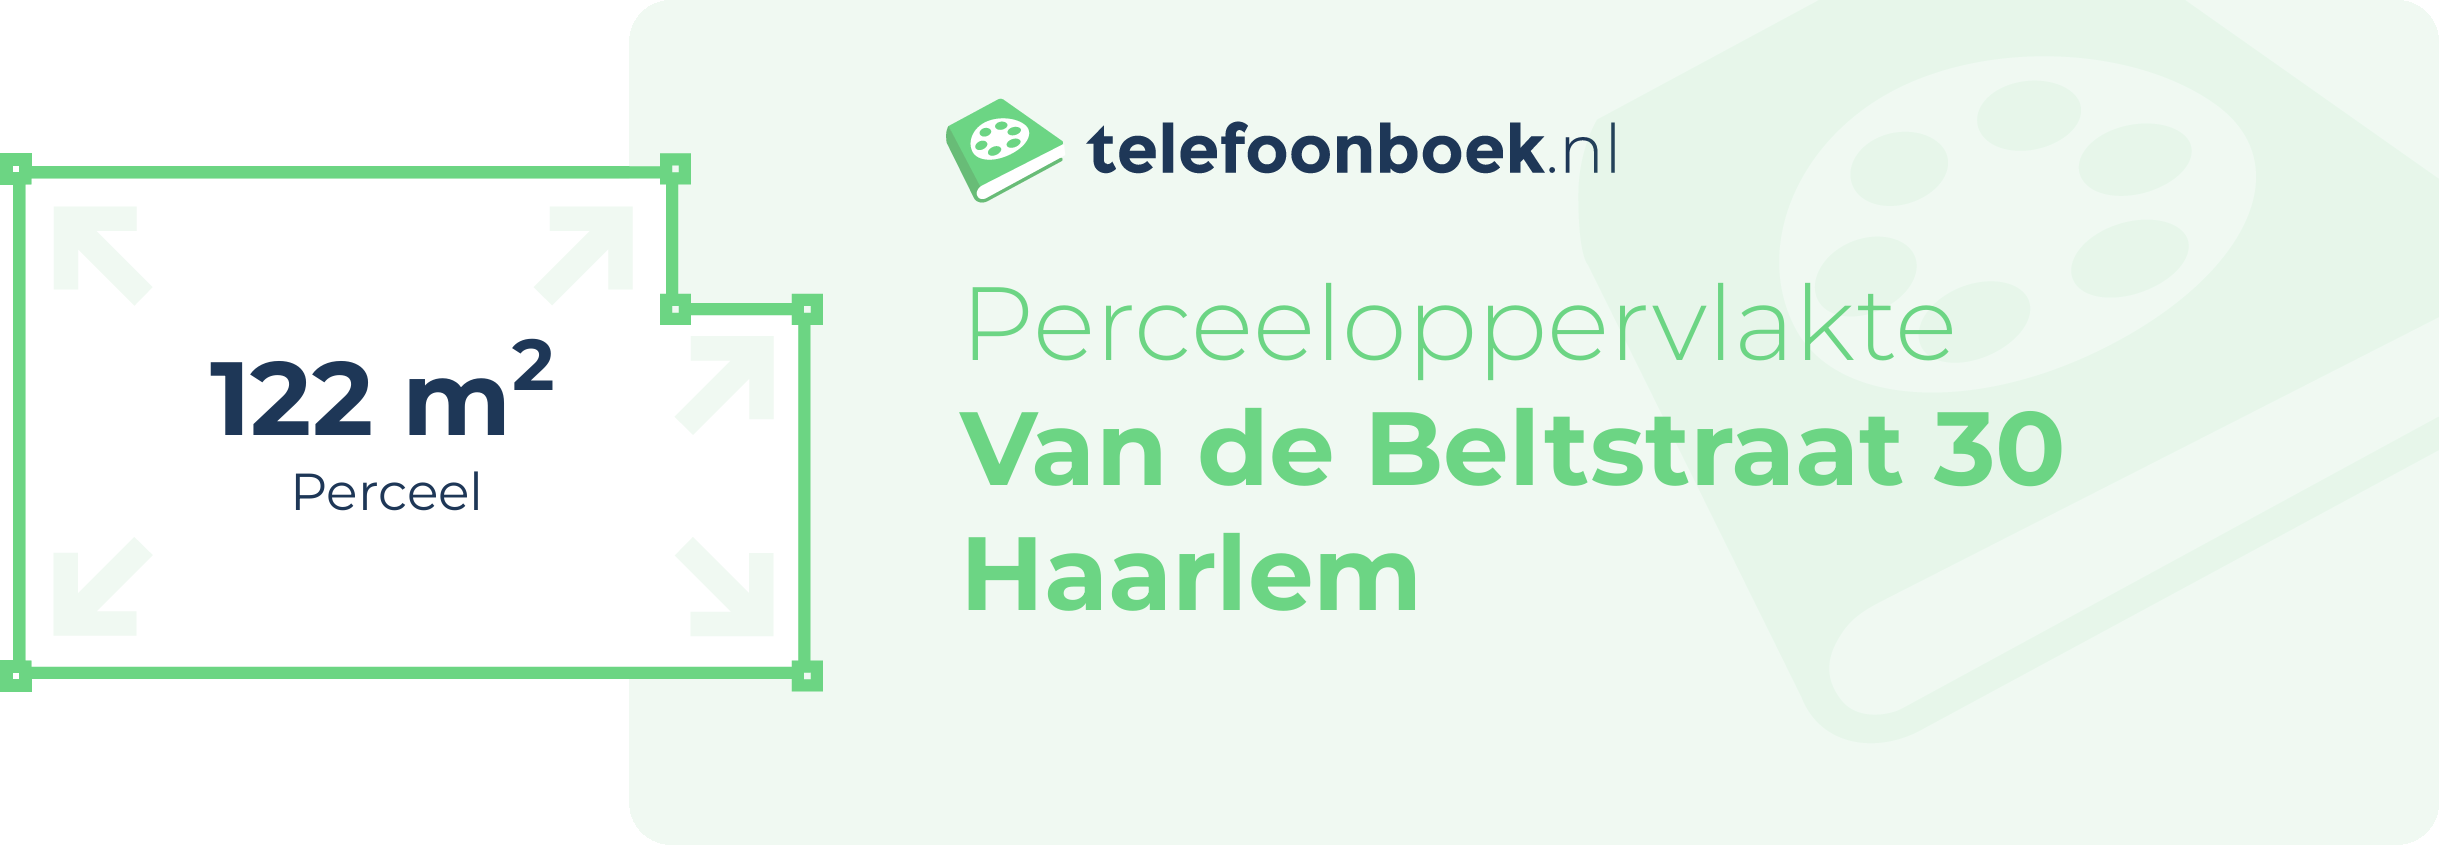 Perceeloppervlakte Van De Beltstraat 30 Haarlem